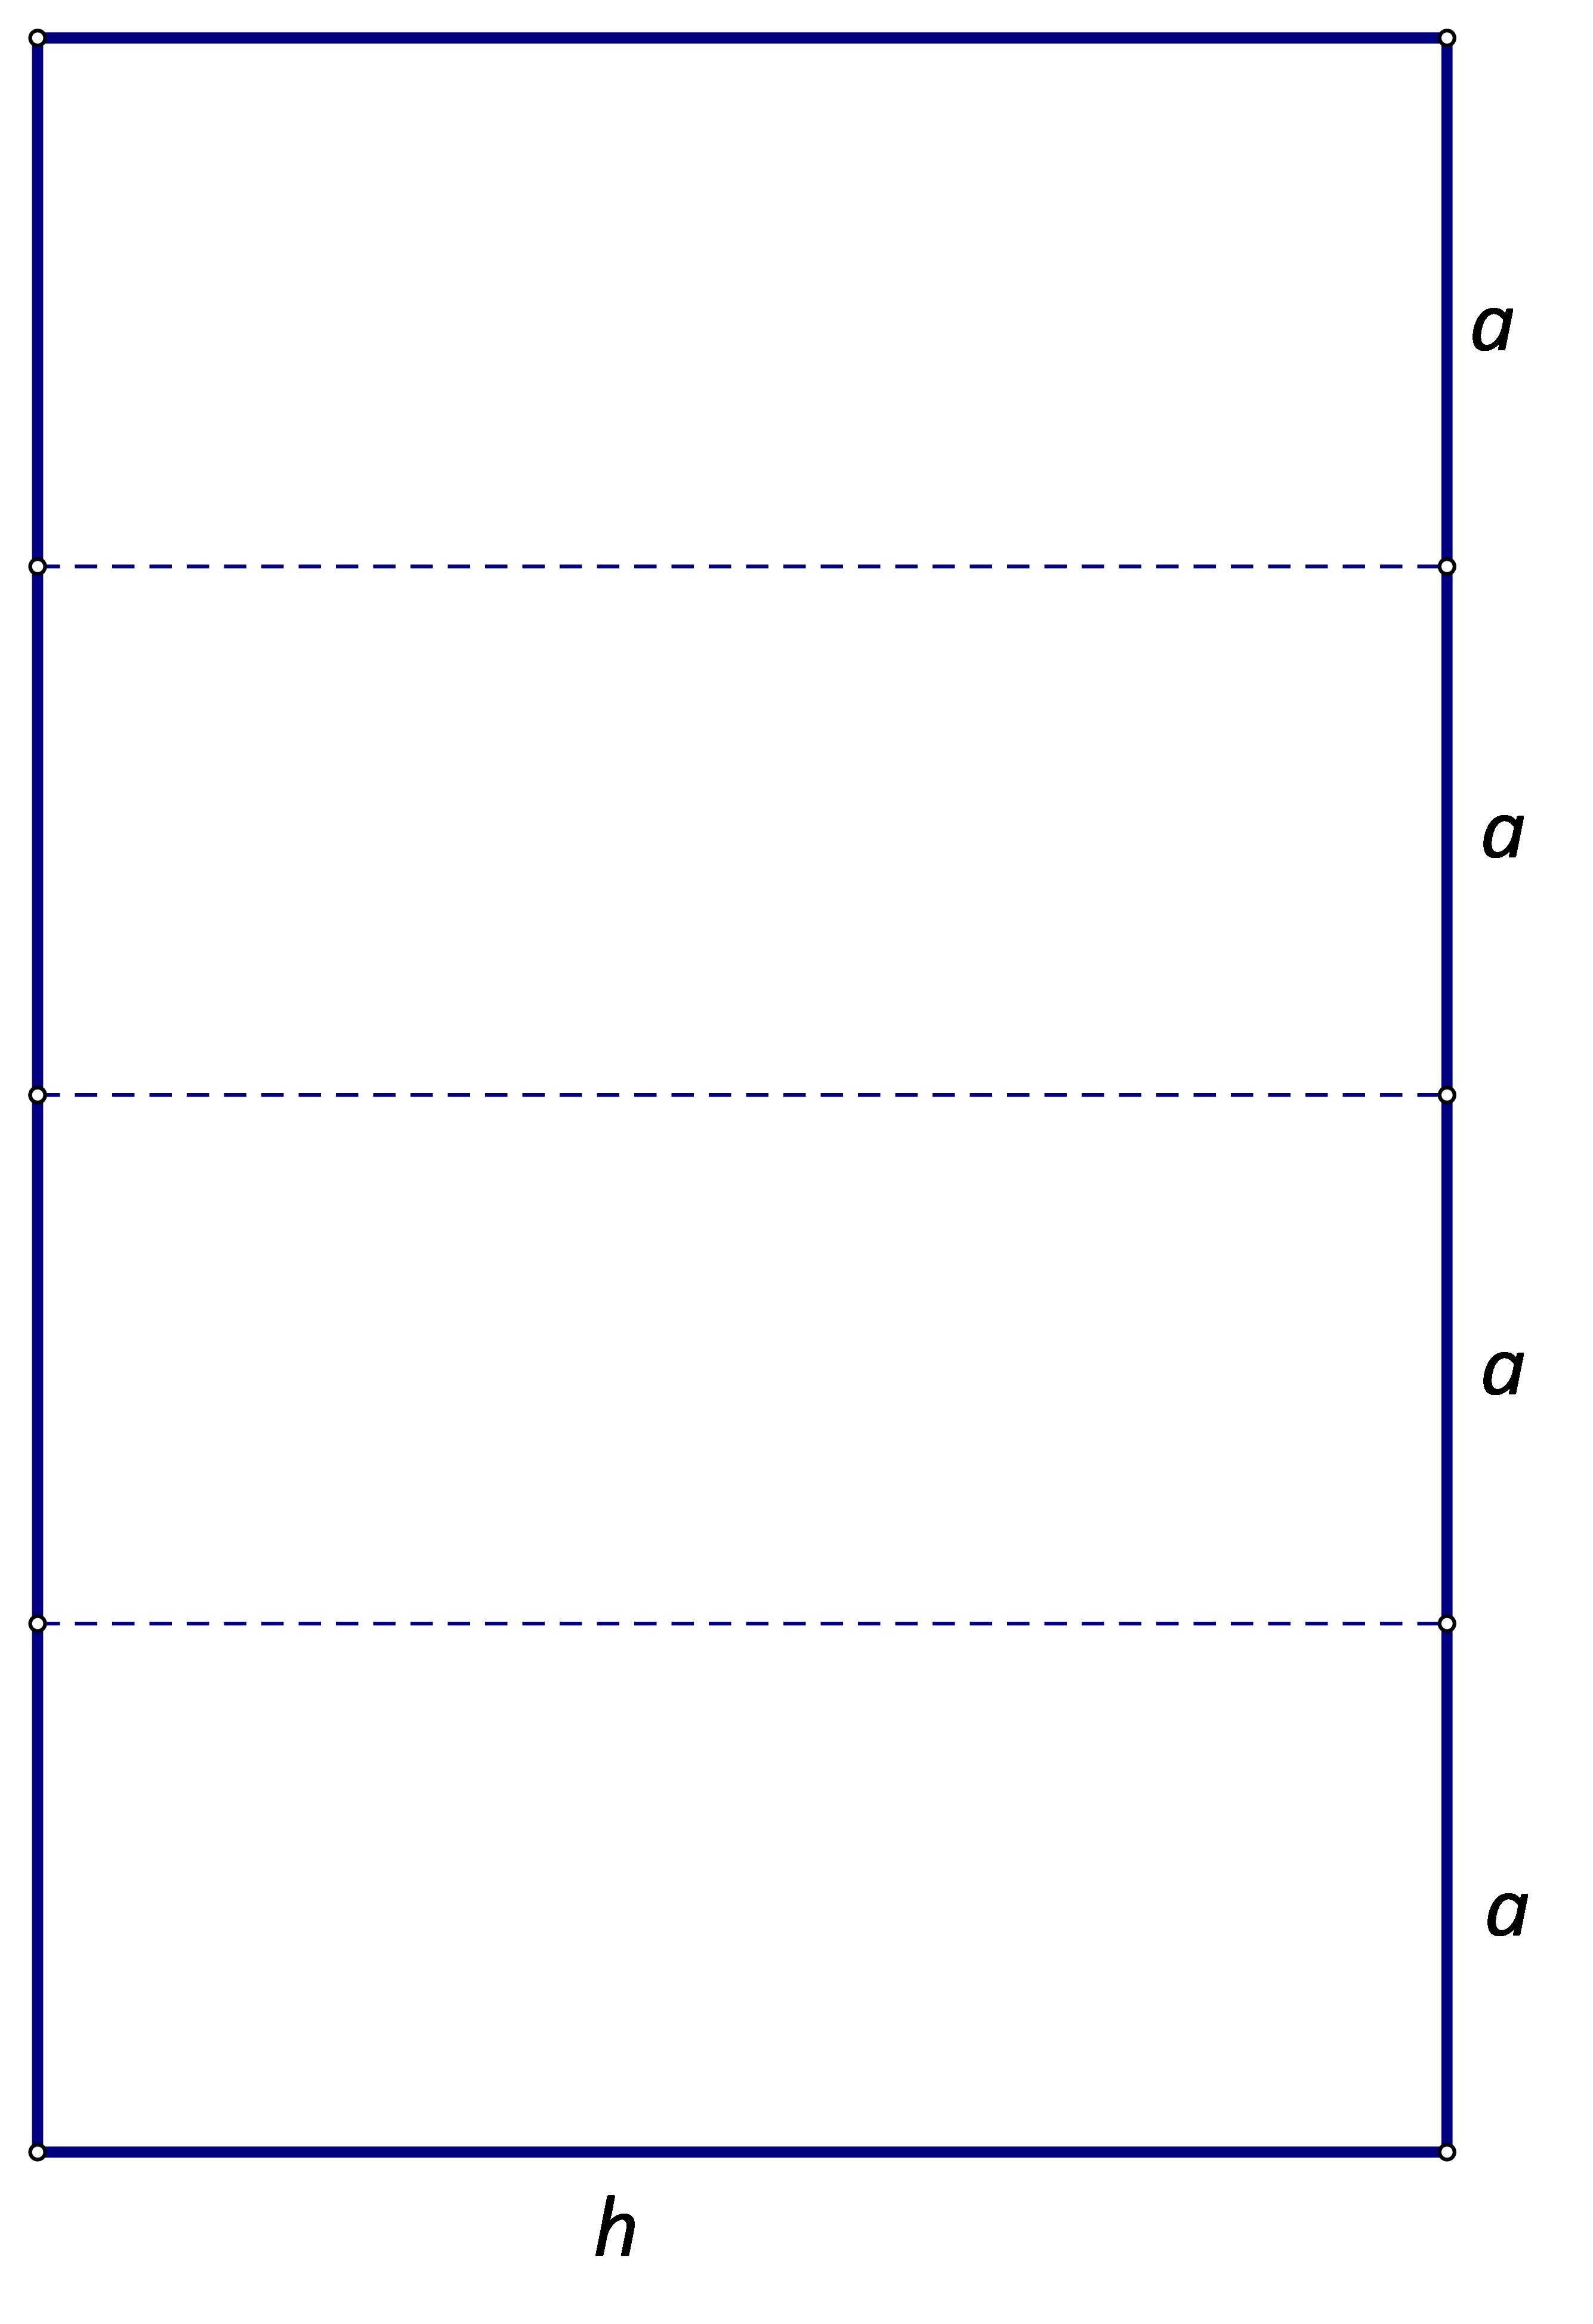 Slika prikazuje pobočje niske četverostrane prizme prema uputama iz zadatka.